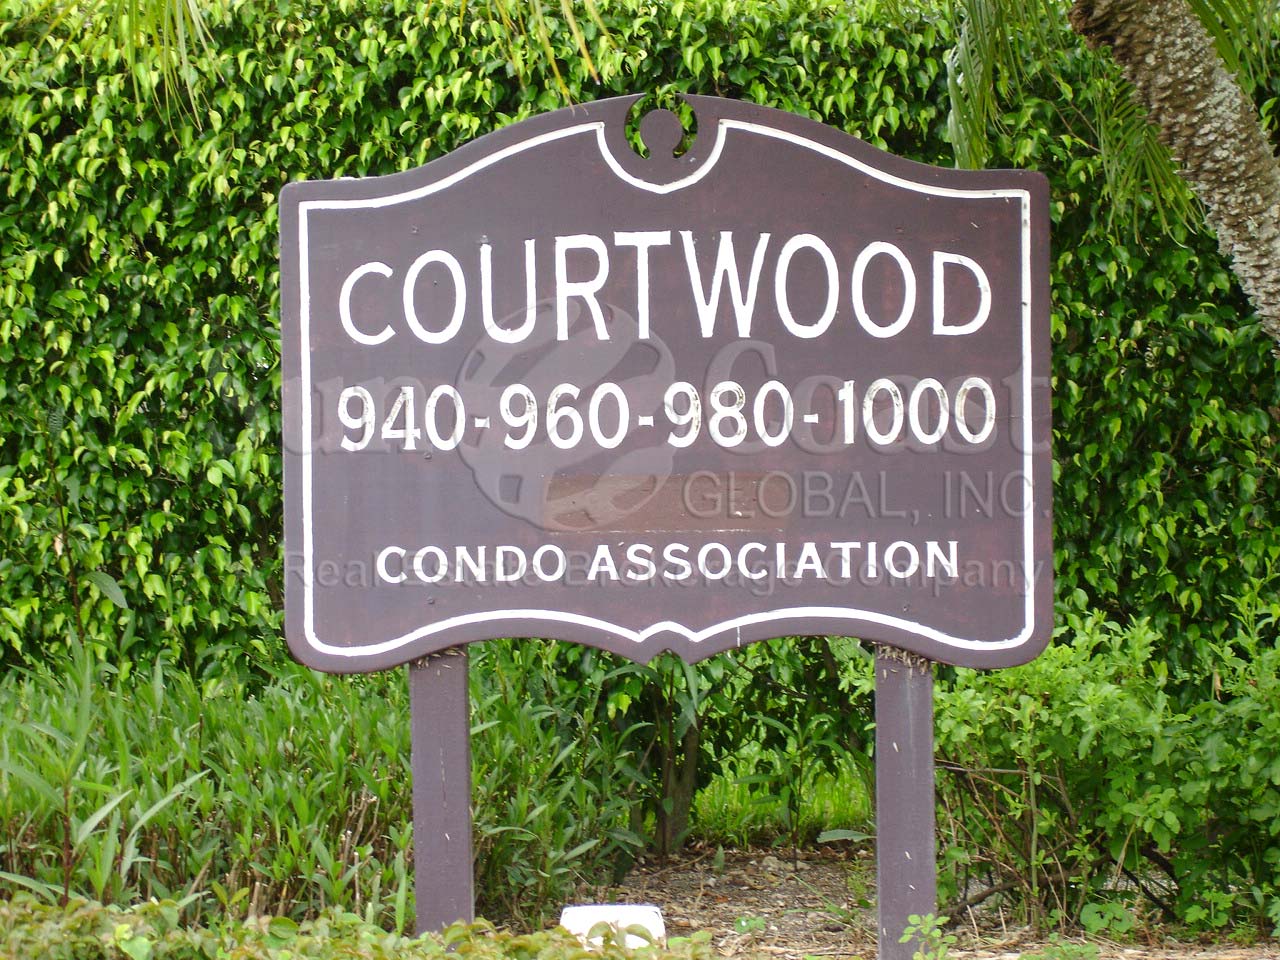 Courtwood Signage